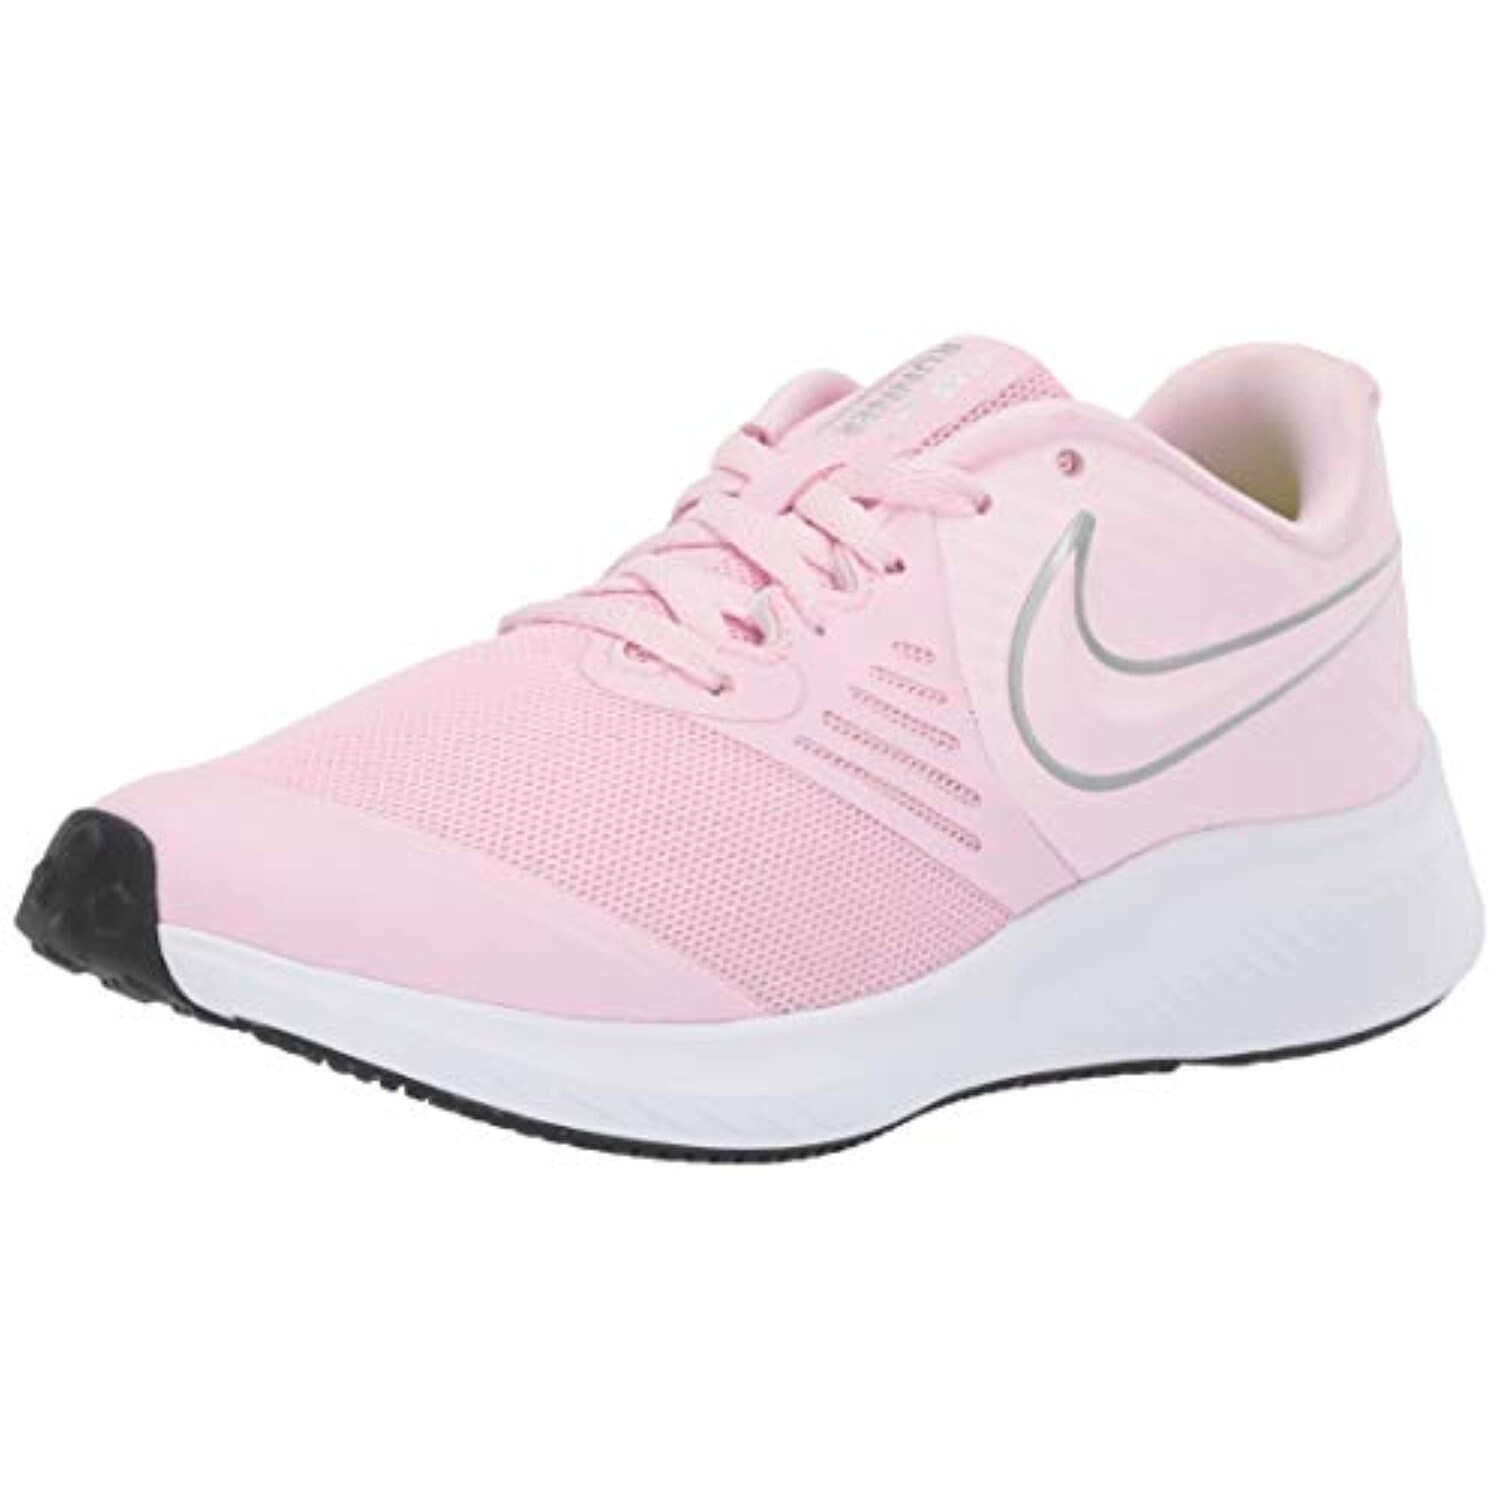 boys pink sneakers